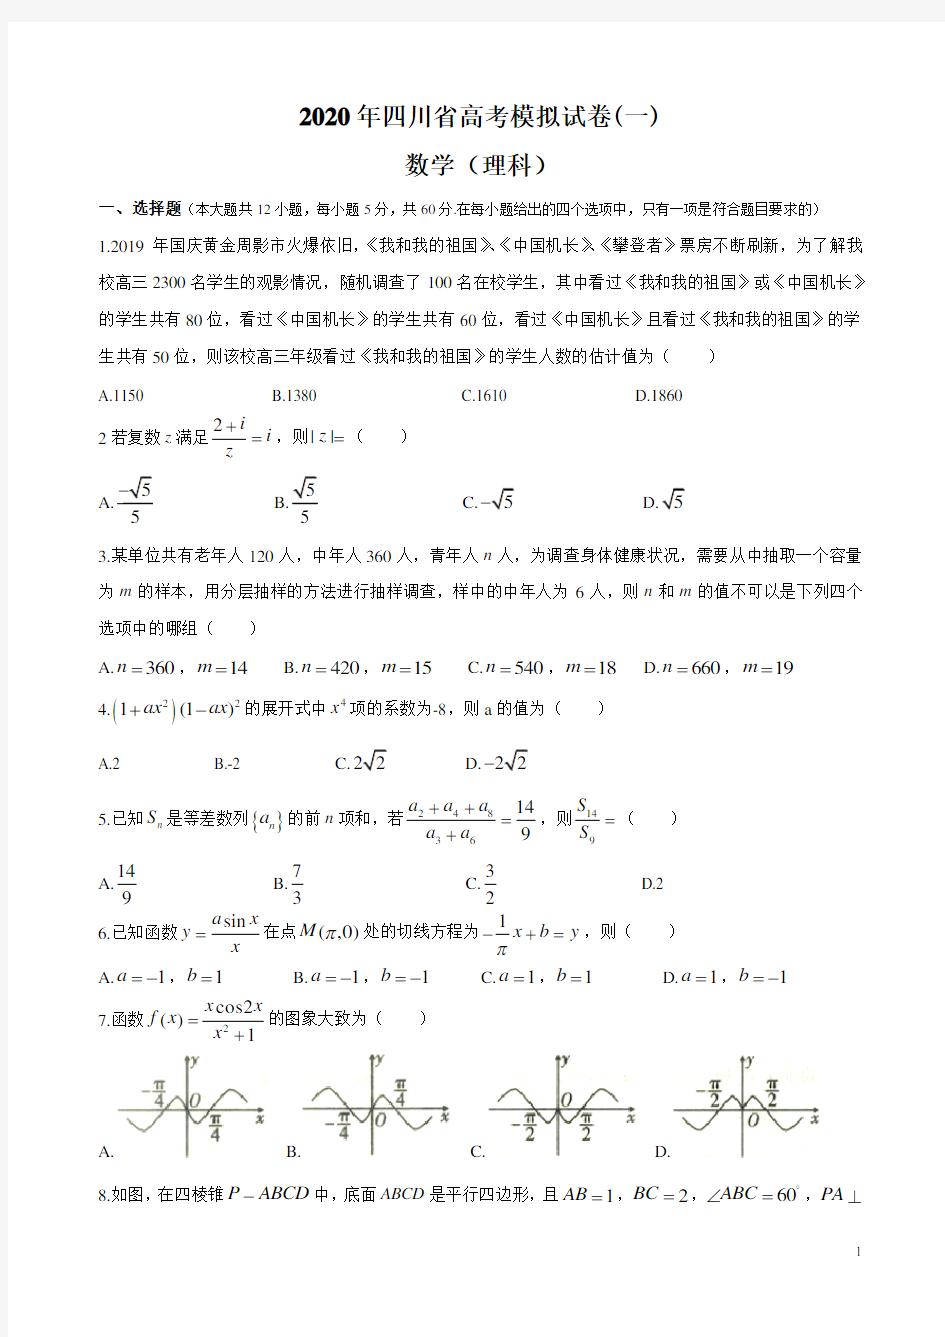 2020年四川省高考模拟试卷数学理科(1)